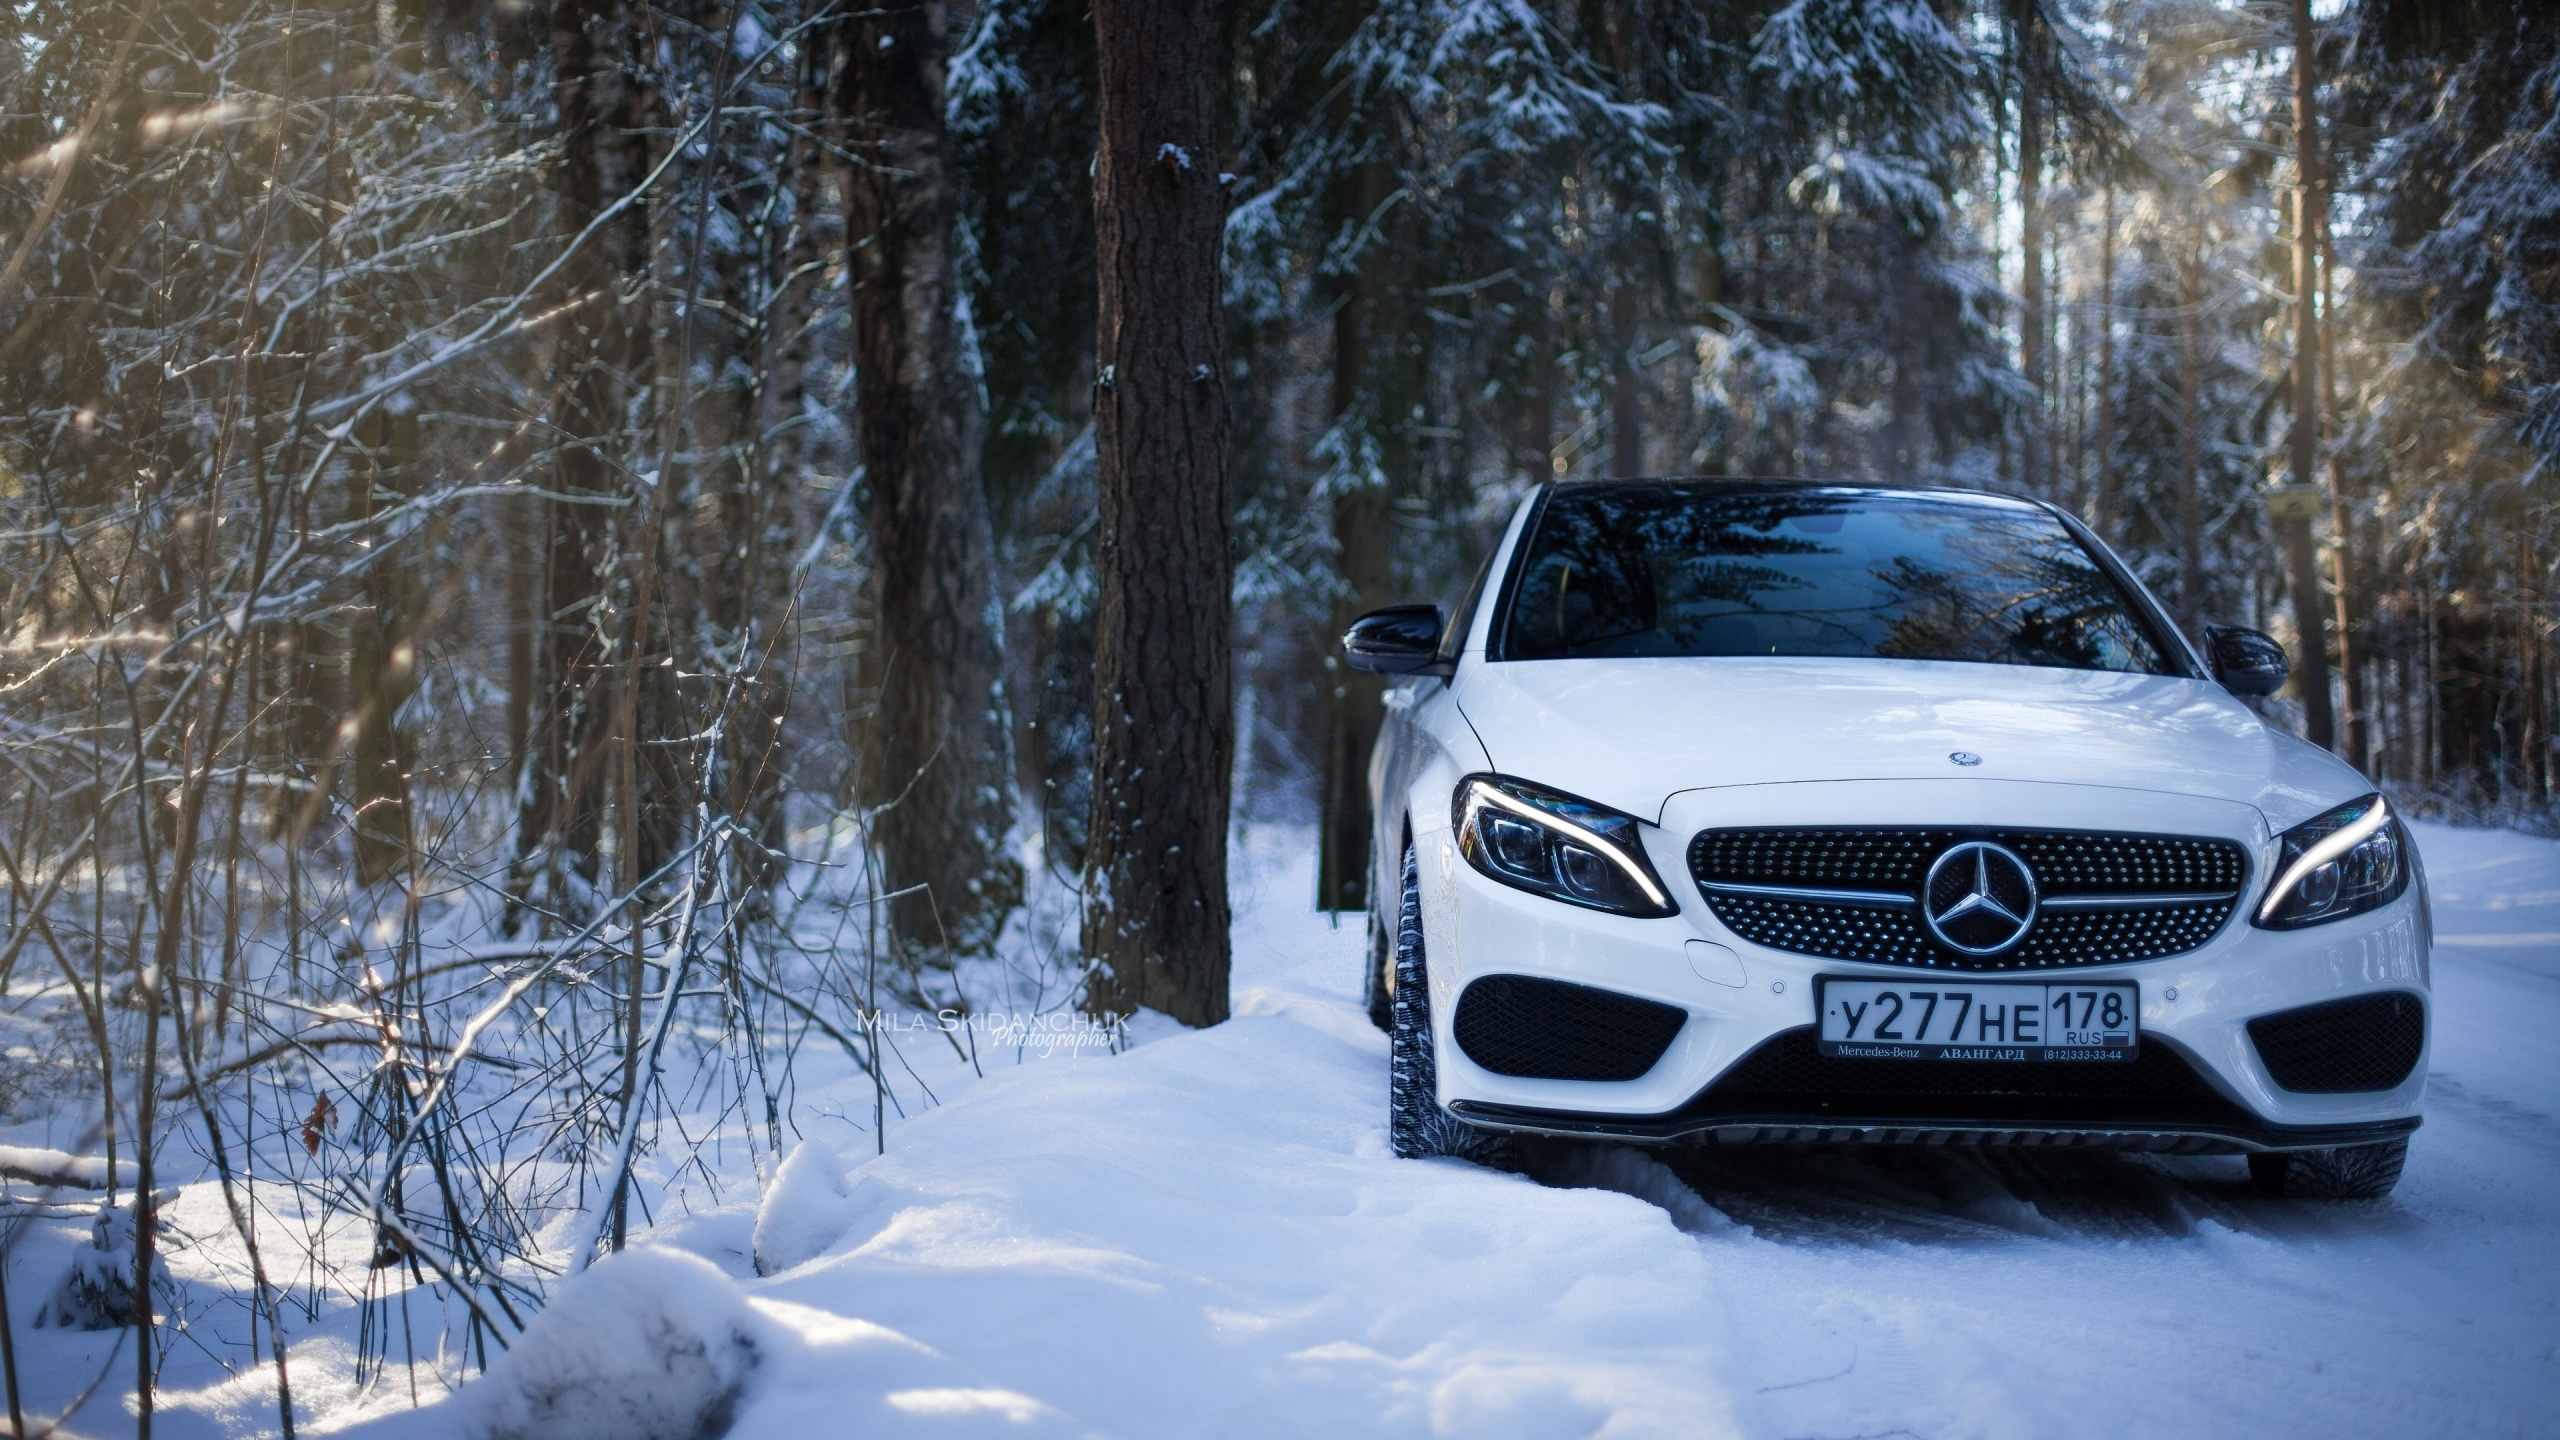 Weißes Mercedes Benz Auto Auf Verschneitem Boden. Wallpaper in 2560x1440 Resolution